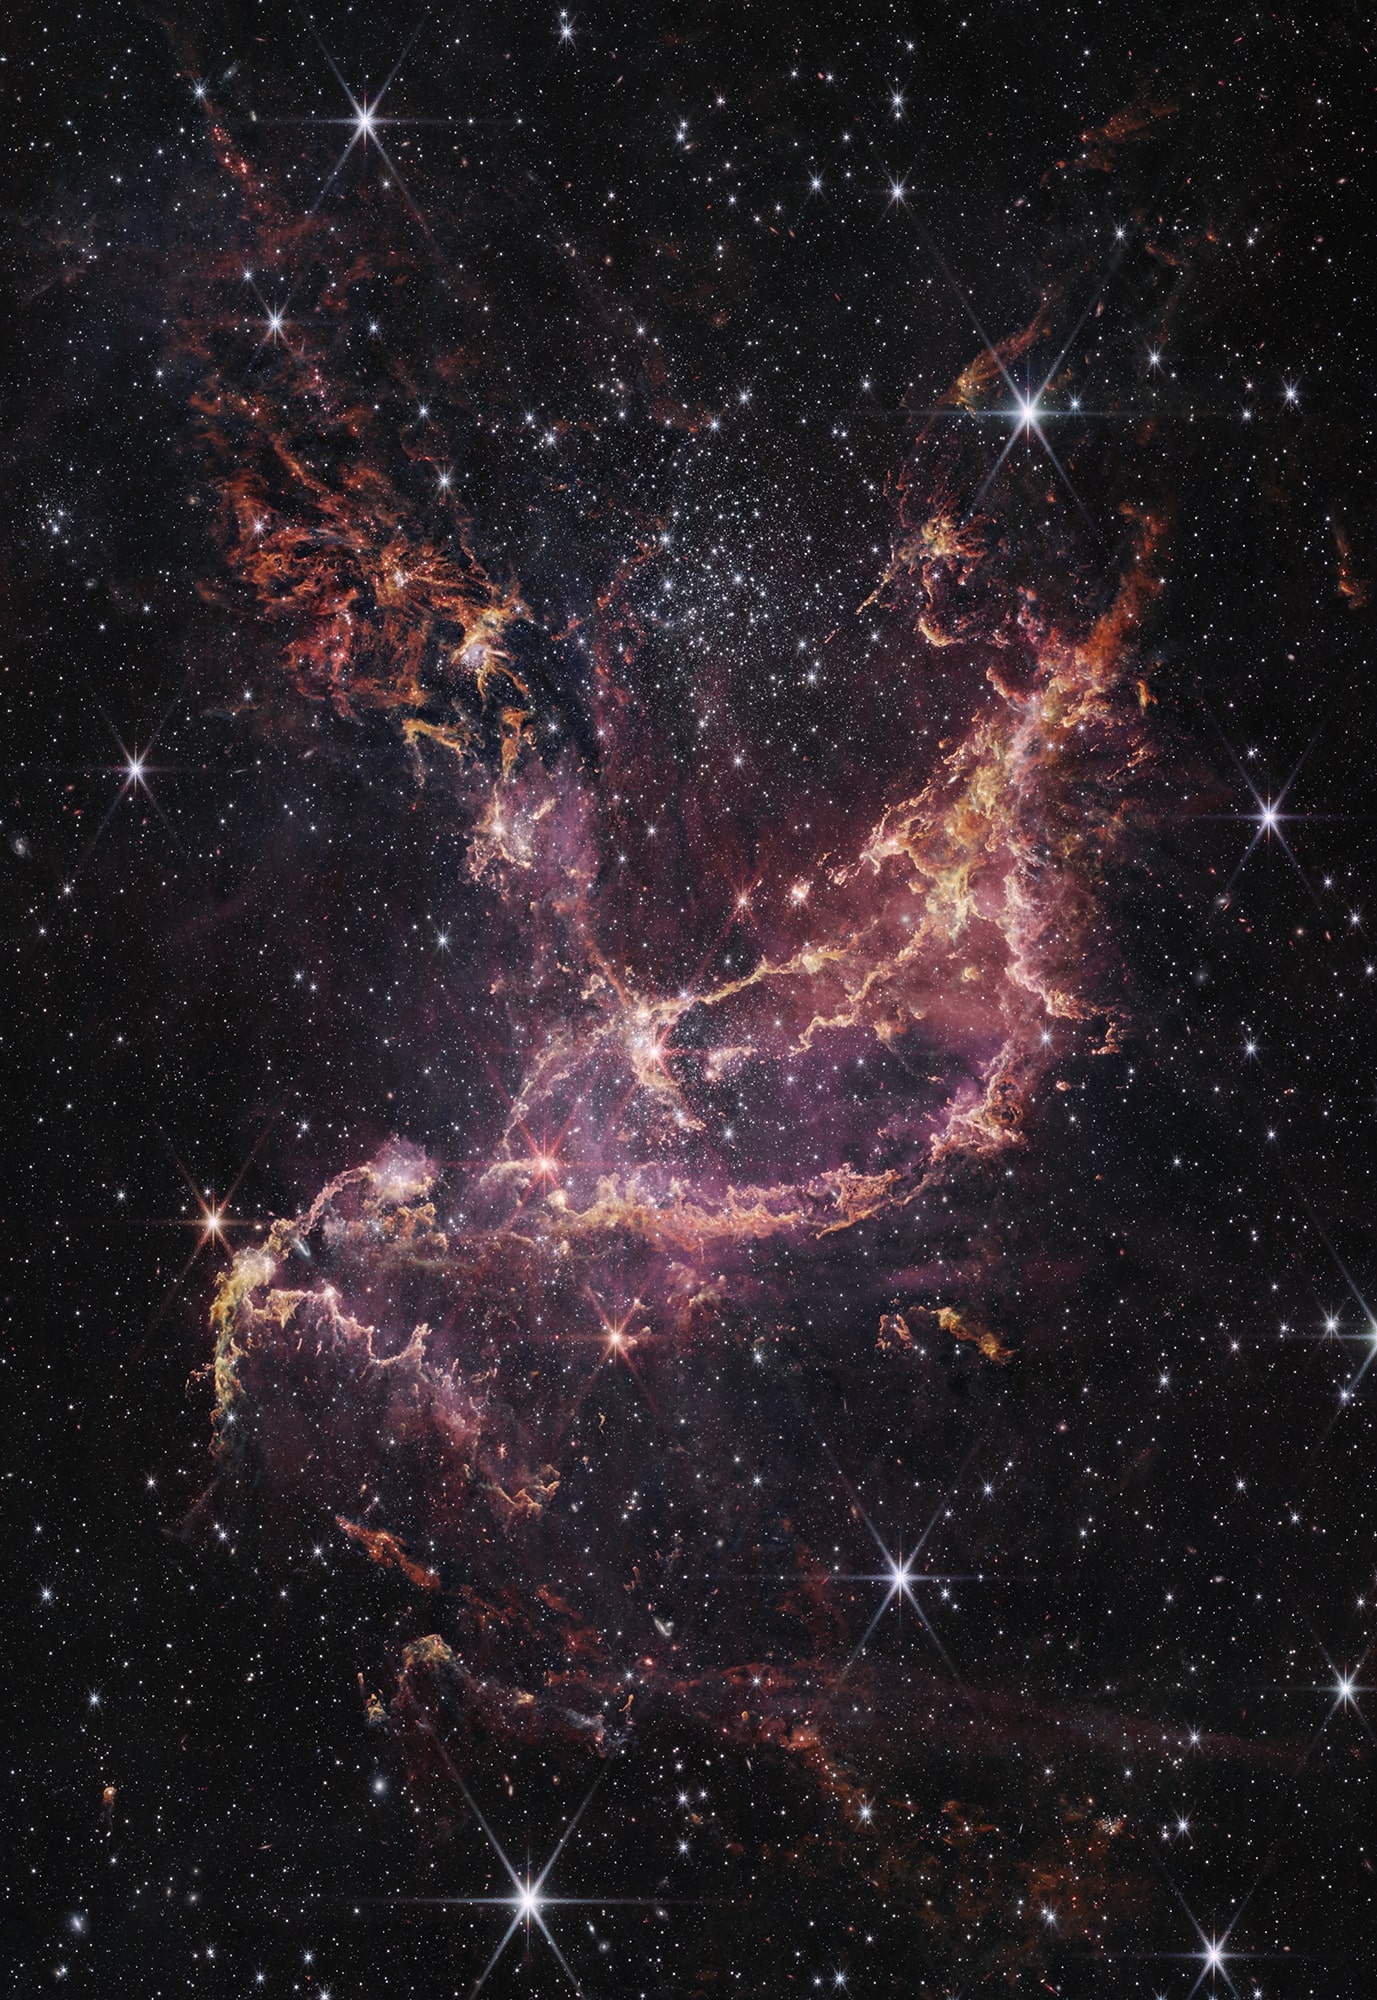 नासा के जेम्स वेब स्पेस टेलीस्कॉप नियर-इन्फ्रारेड कैमरा (एनआईआरसीएएम) से इस छवि में यहां दिखाया गया एनजीसी 346, एक गतिशील स्टार क्लस्टर है जो 200,000 प्रकाश वर्ष दूर एक नेबुला के भीतर स्थित है।